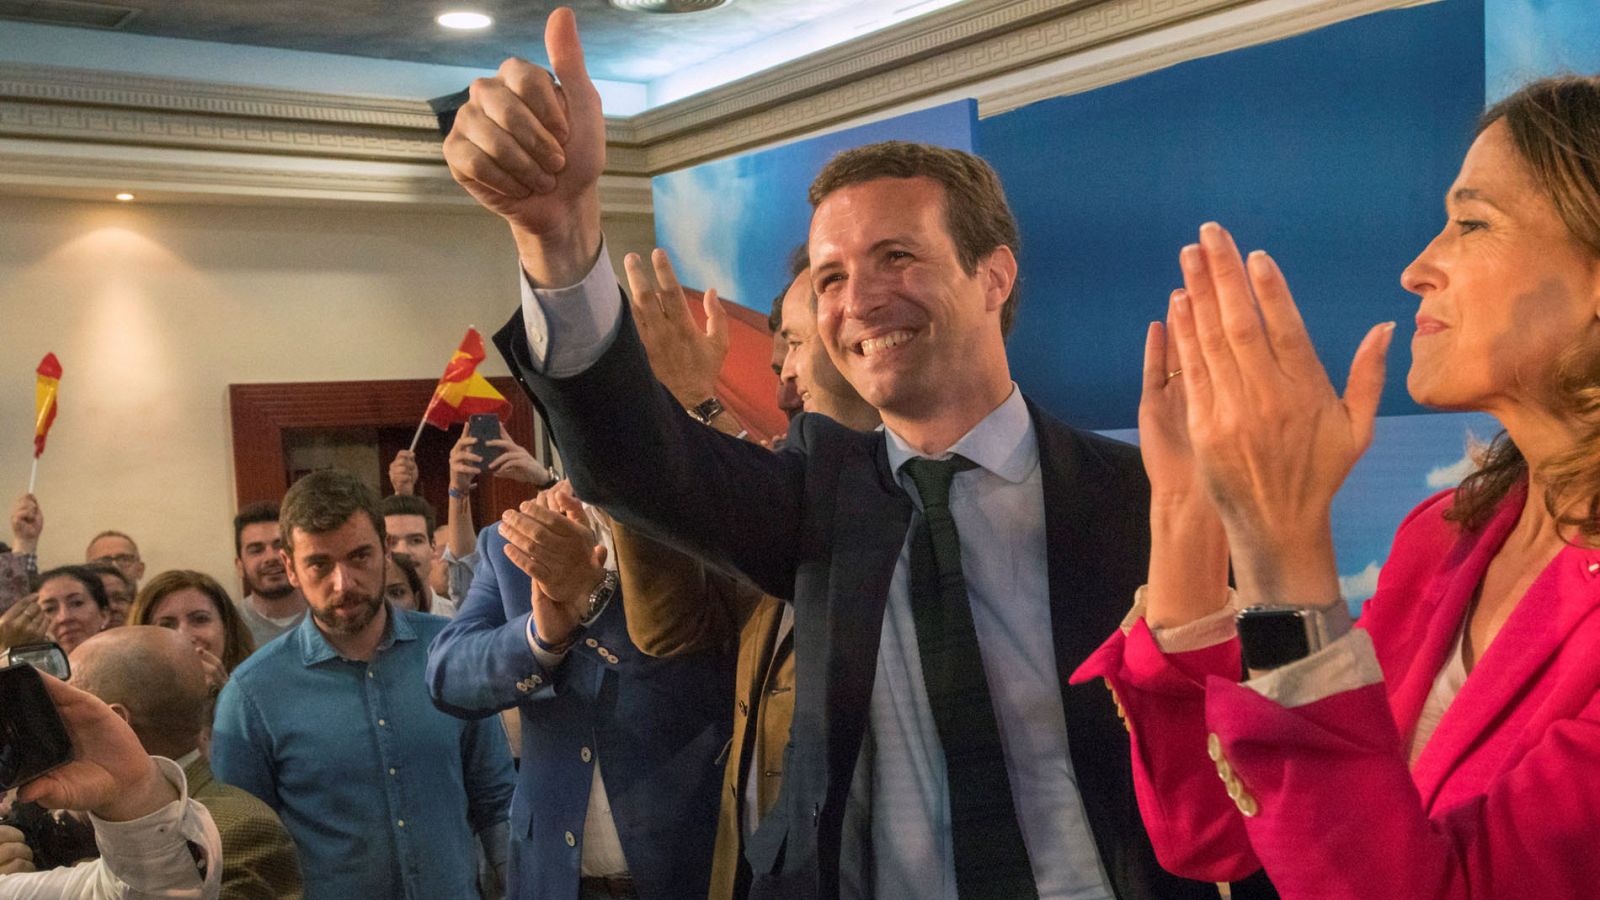 Elecciones generales 2019: Casado asegura que Sánchez "patrocina la sedición" - RTVE.es